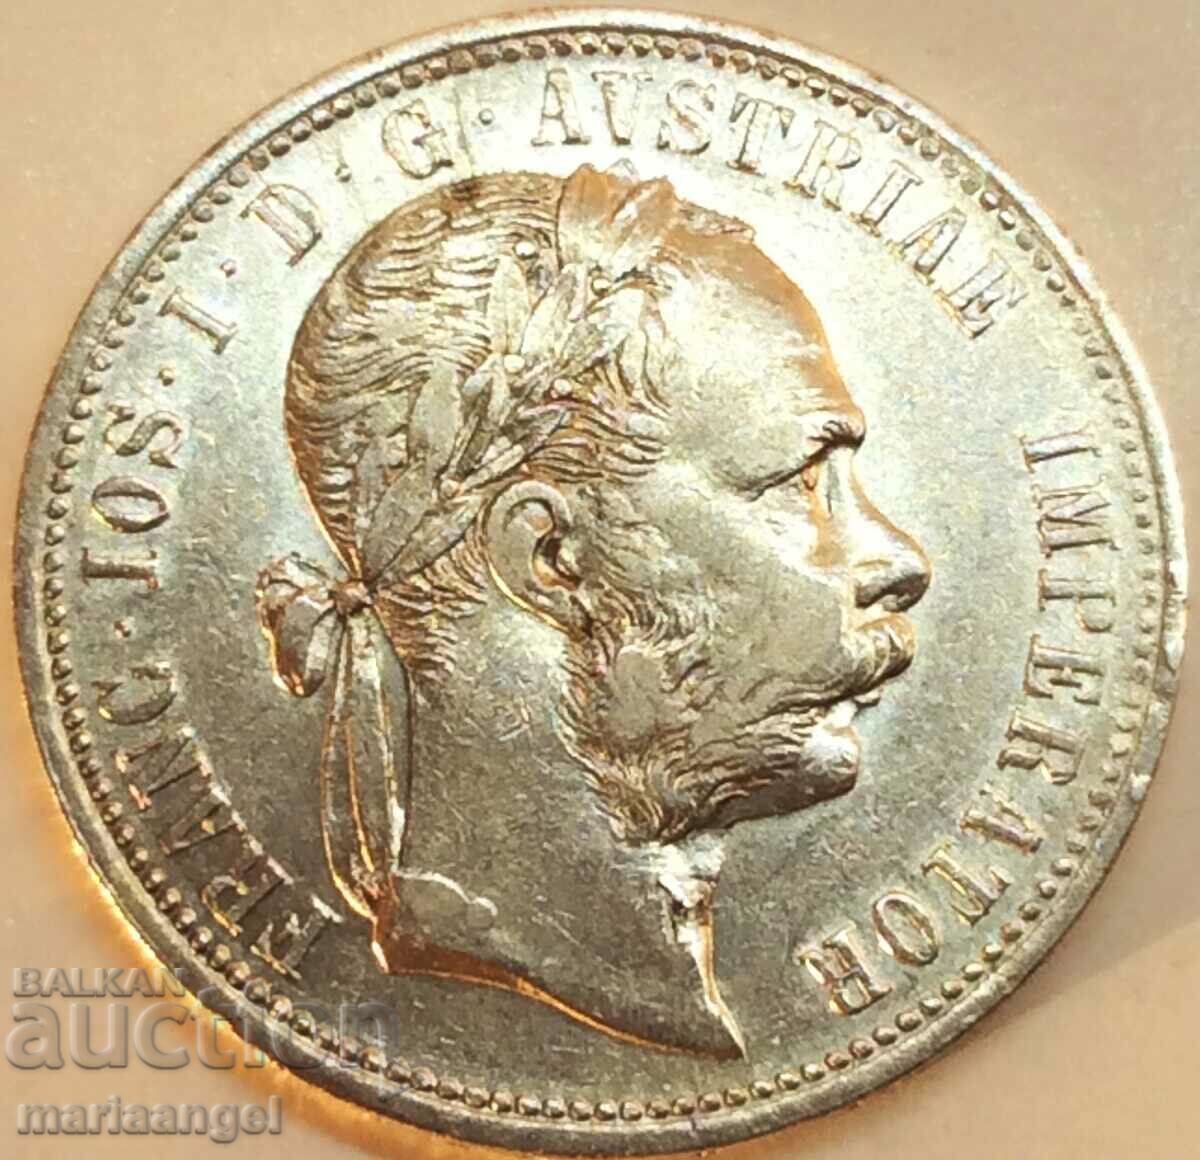 Austria 1 florin 1875 Franz Joseph silver - rare year